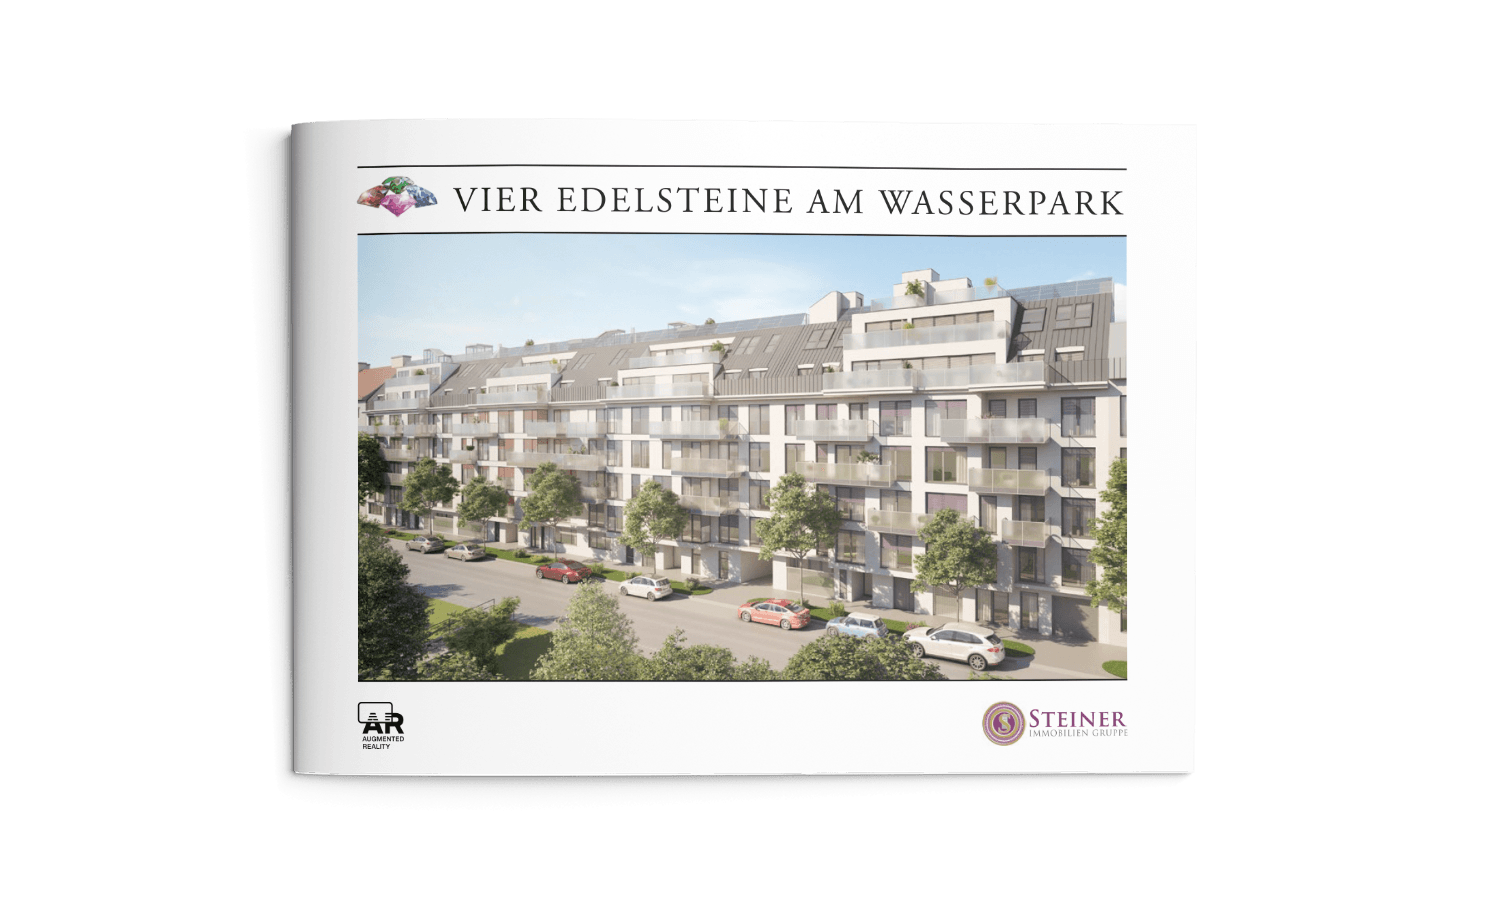 Steiner Immobilien Gruppe - Vier Edelsteine am Wasser - Folder Design